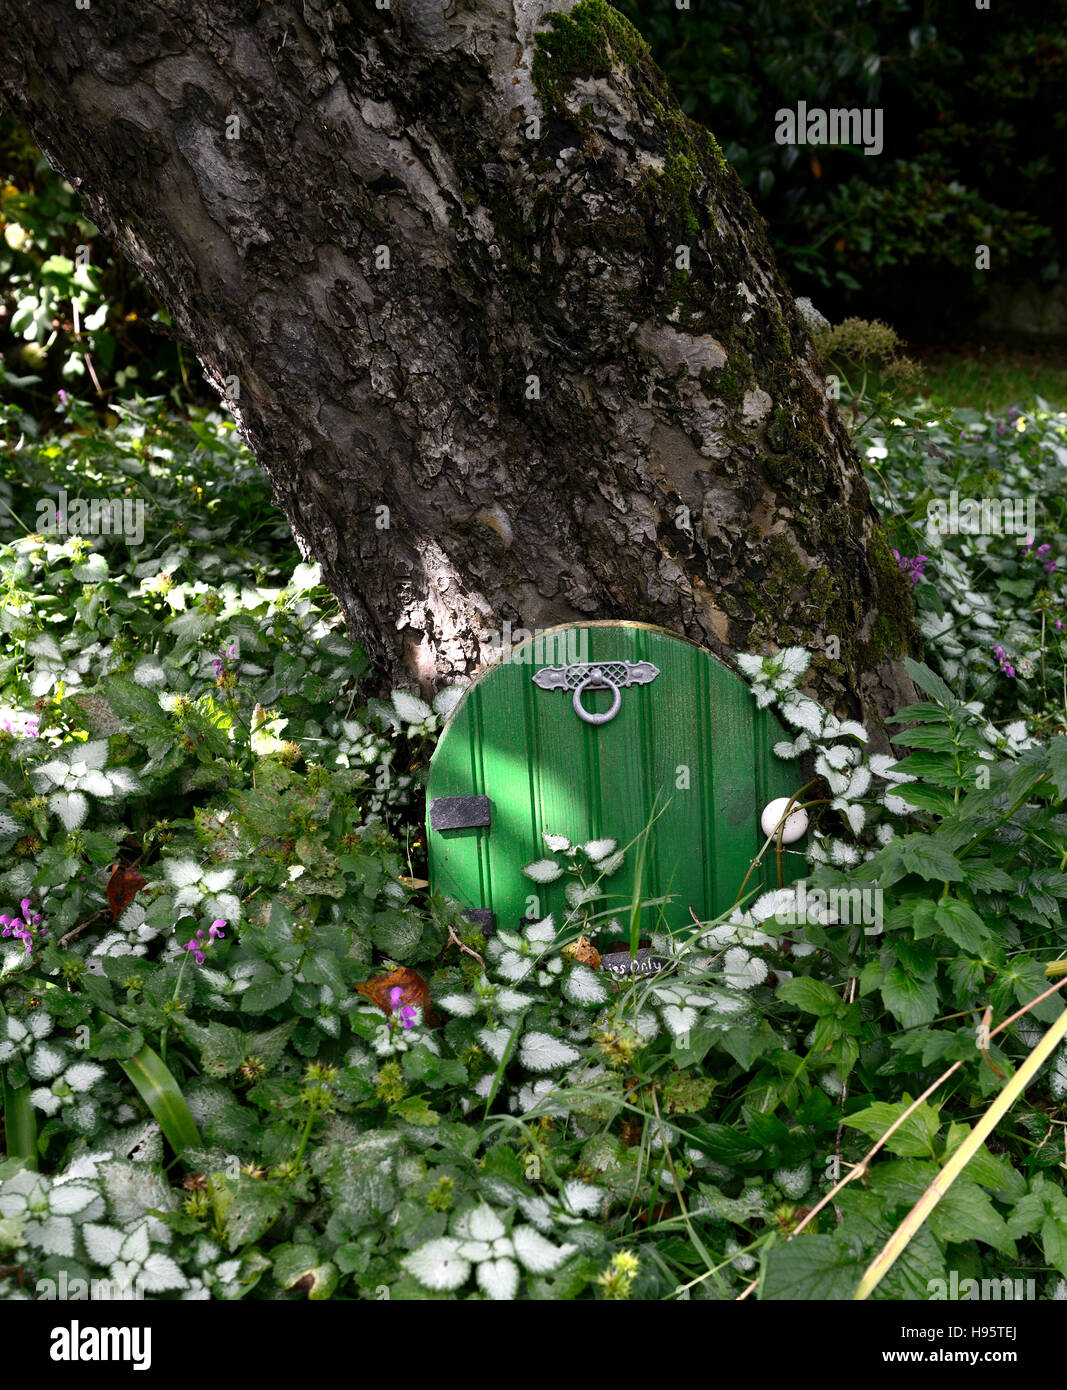 Porte chambre fée arbre décoration de jardin Décorez l'extérieur amusant nain miniature fantasy faire croire fairies accueil Floral RM Banque D'Images